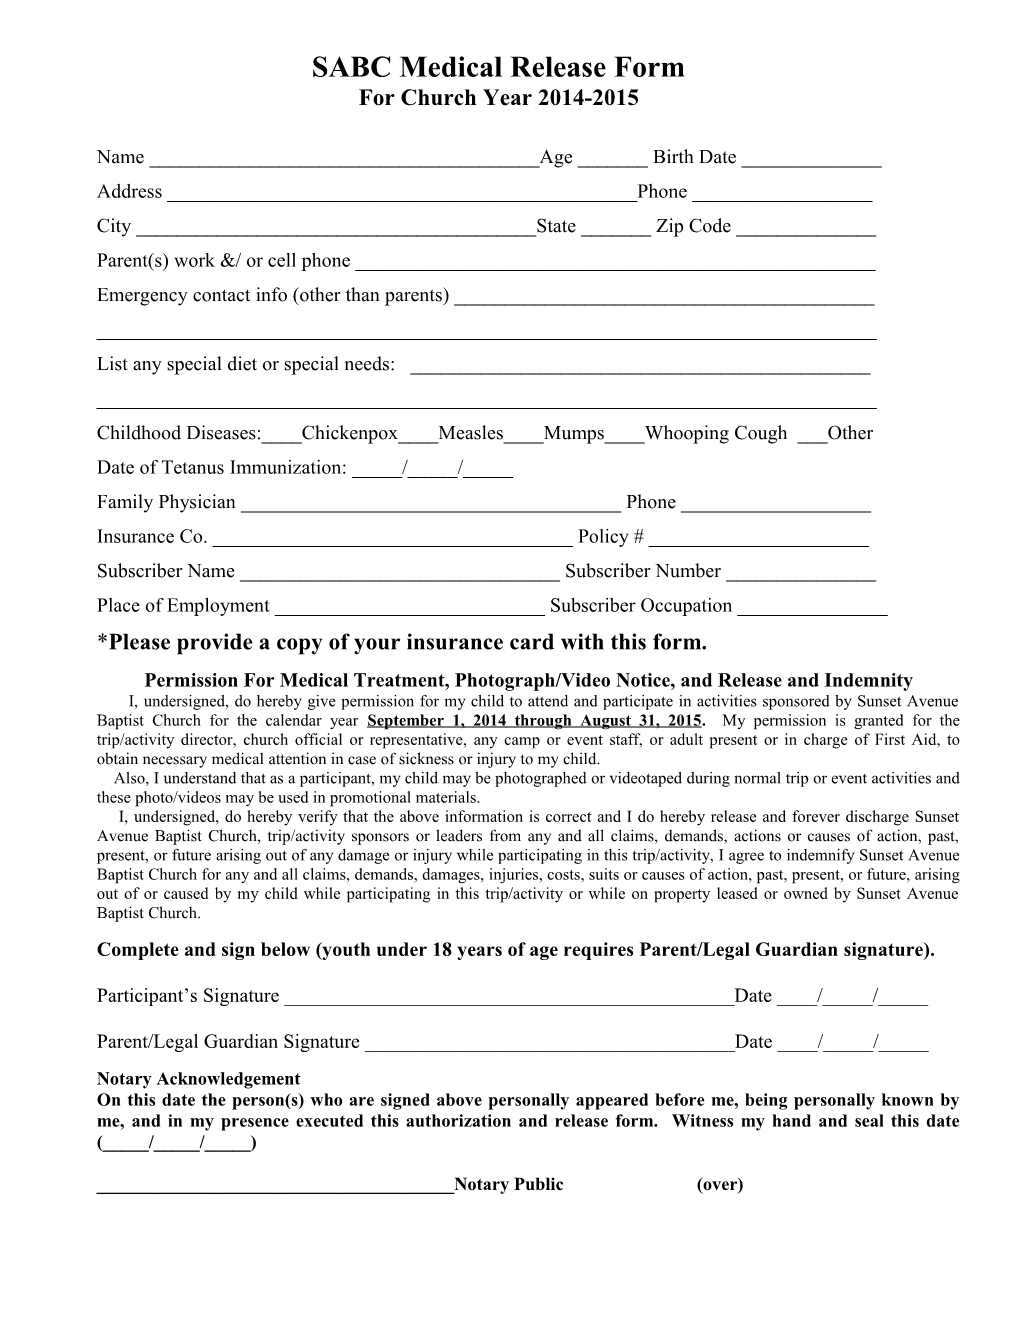 SABC Medical Release Form